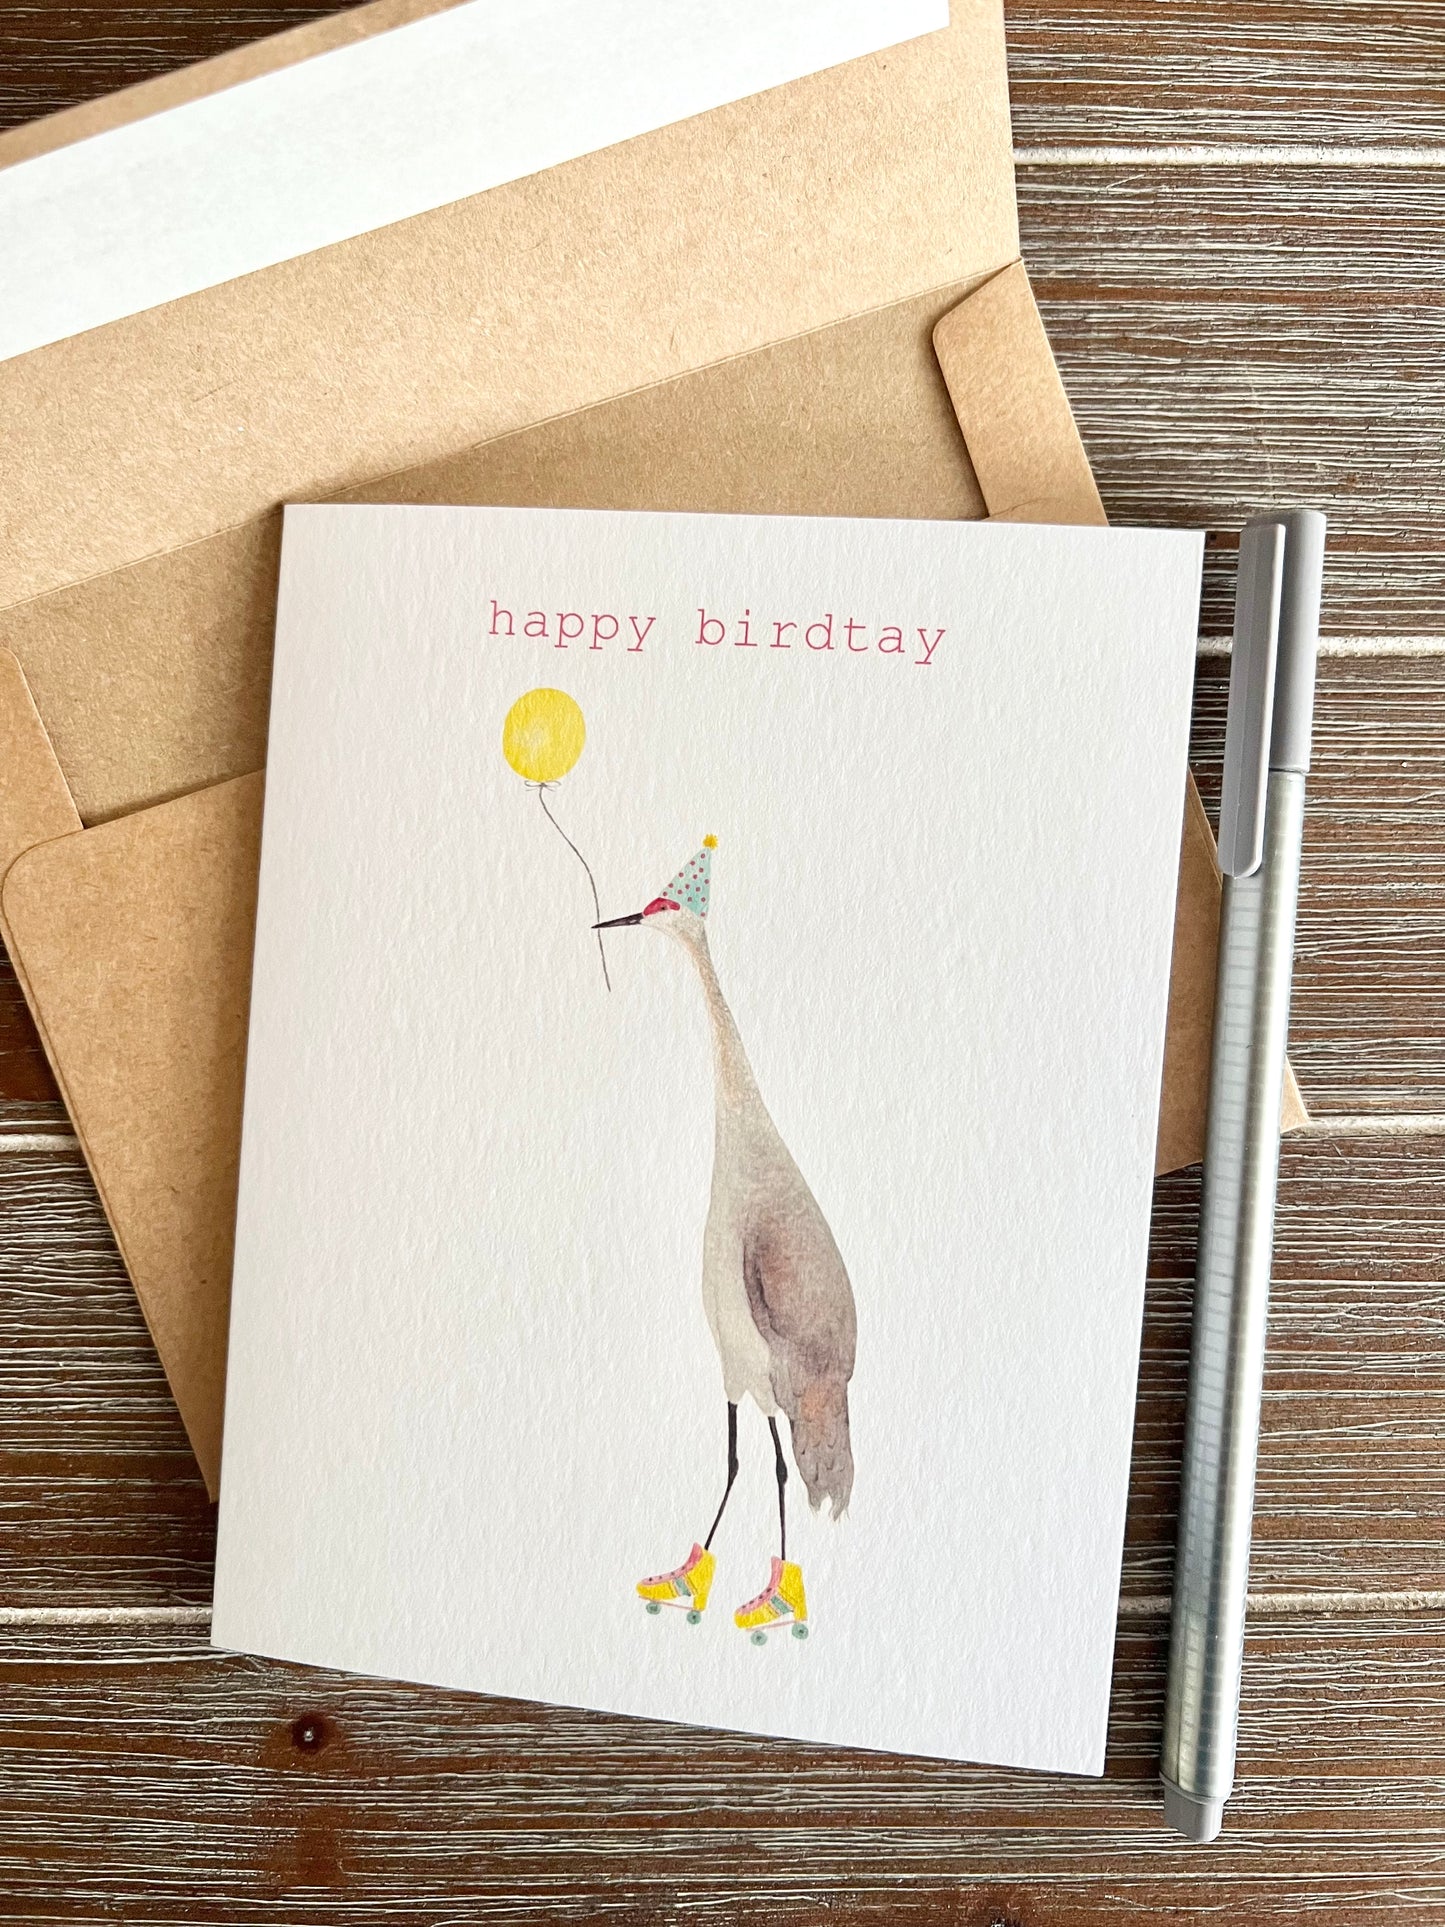 Happy "Birdtay" Sandhill Crane Card